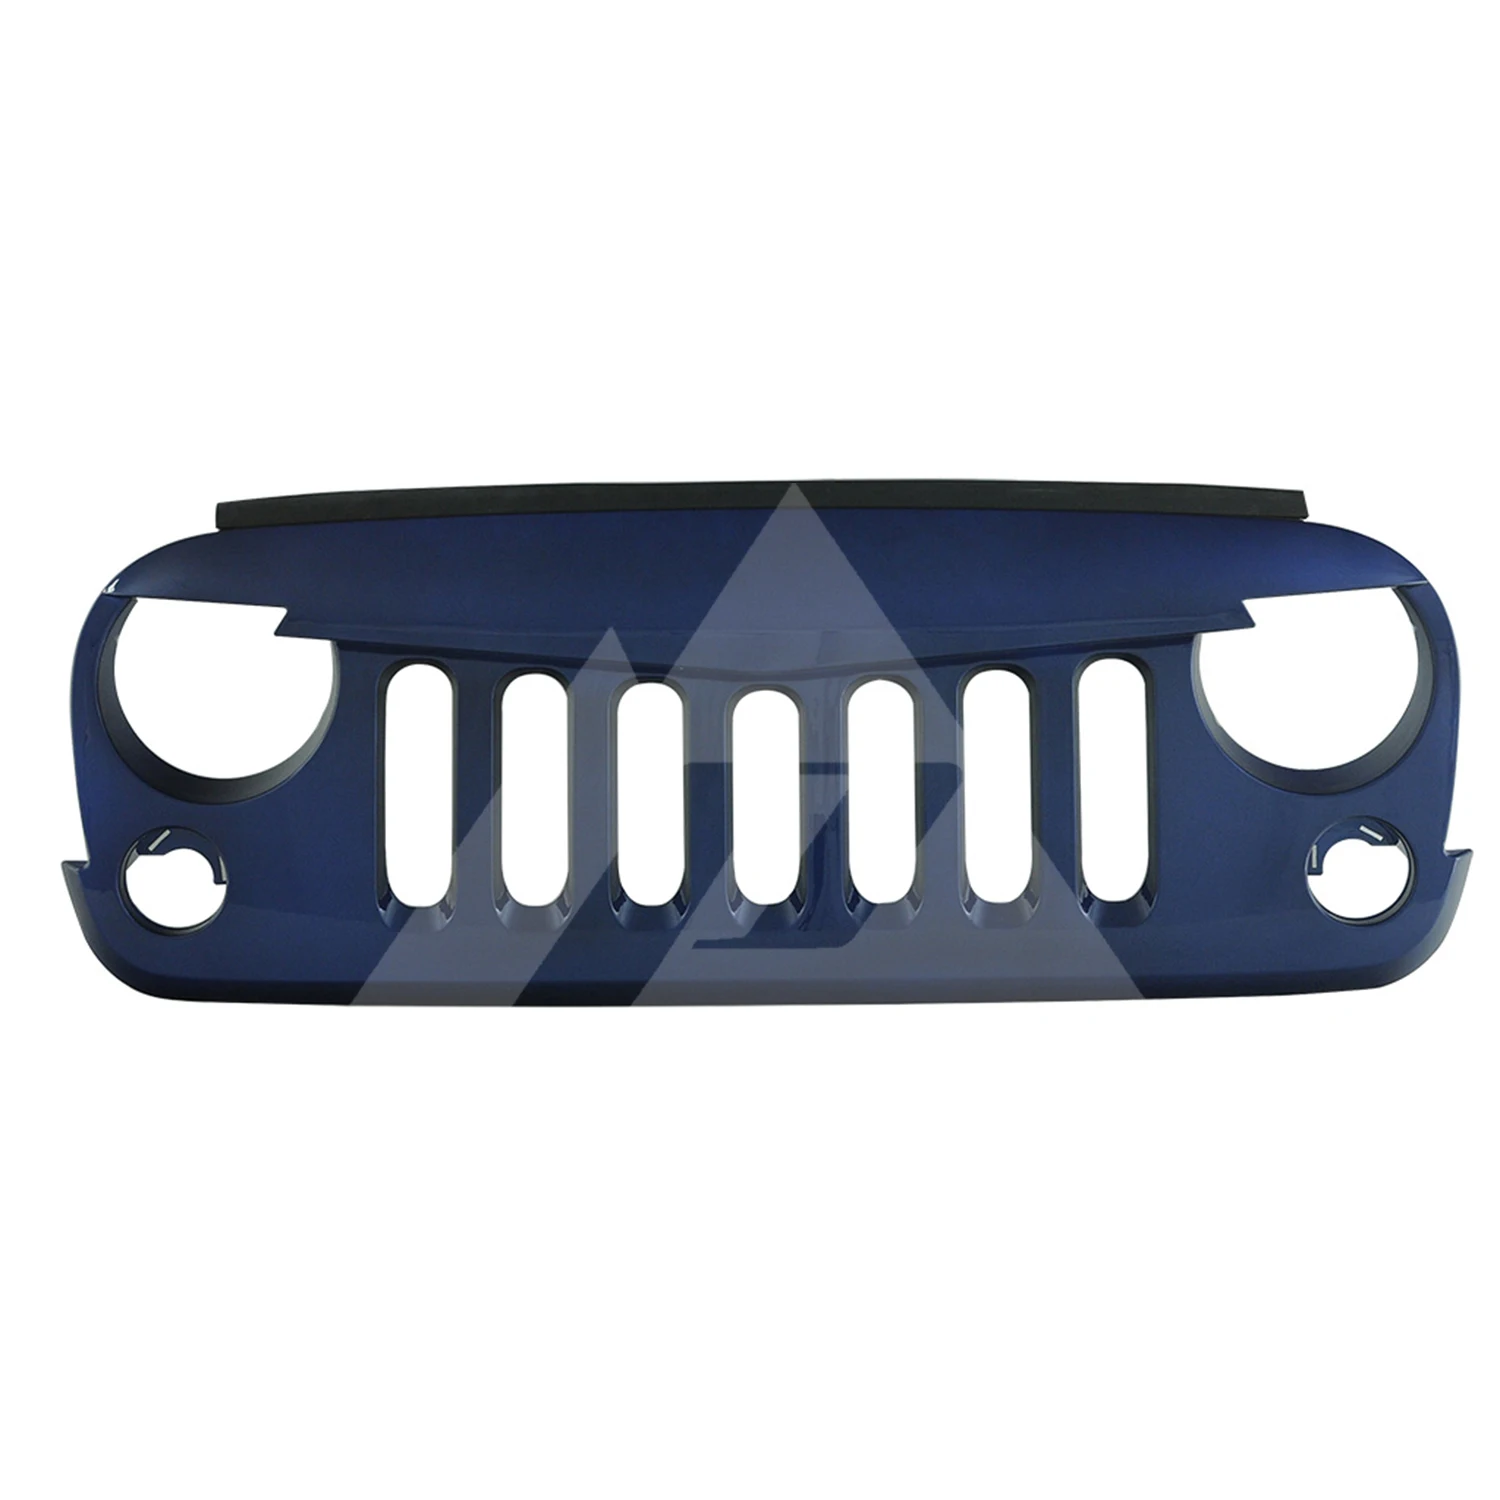 Для 2007 2008 2009 2010 2011 2012 2013 Jeep Wrangler JK «Angry Bird» синего цвета упакованы решетка